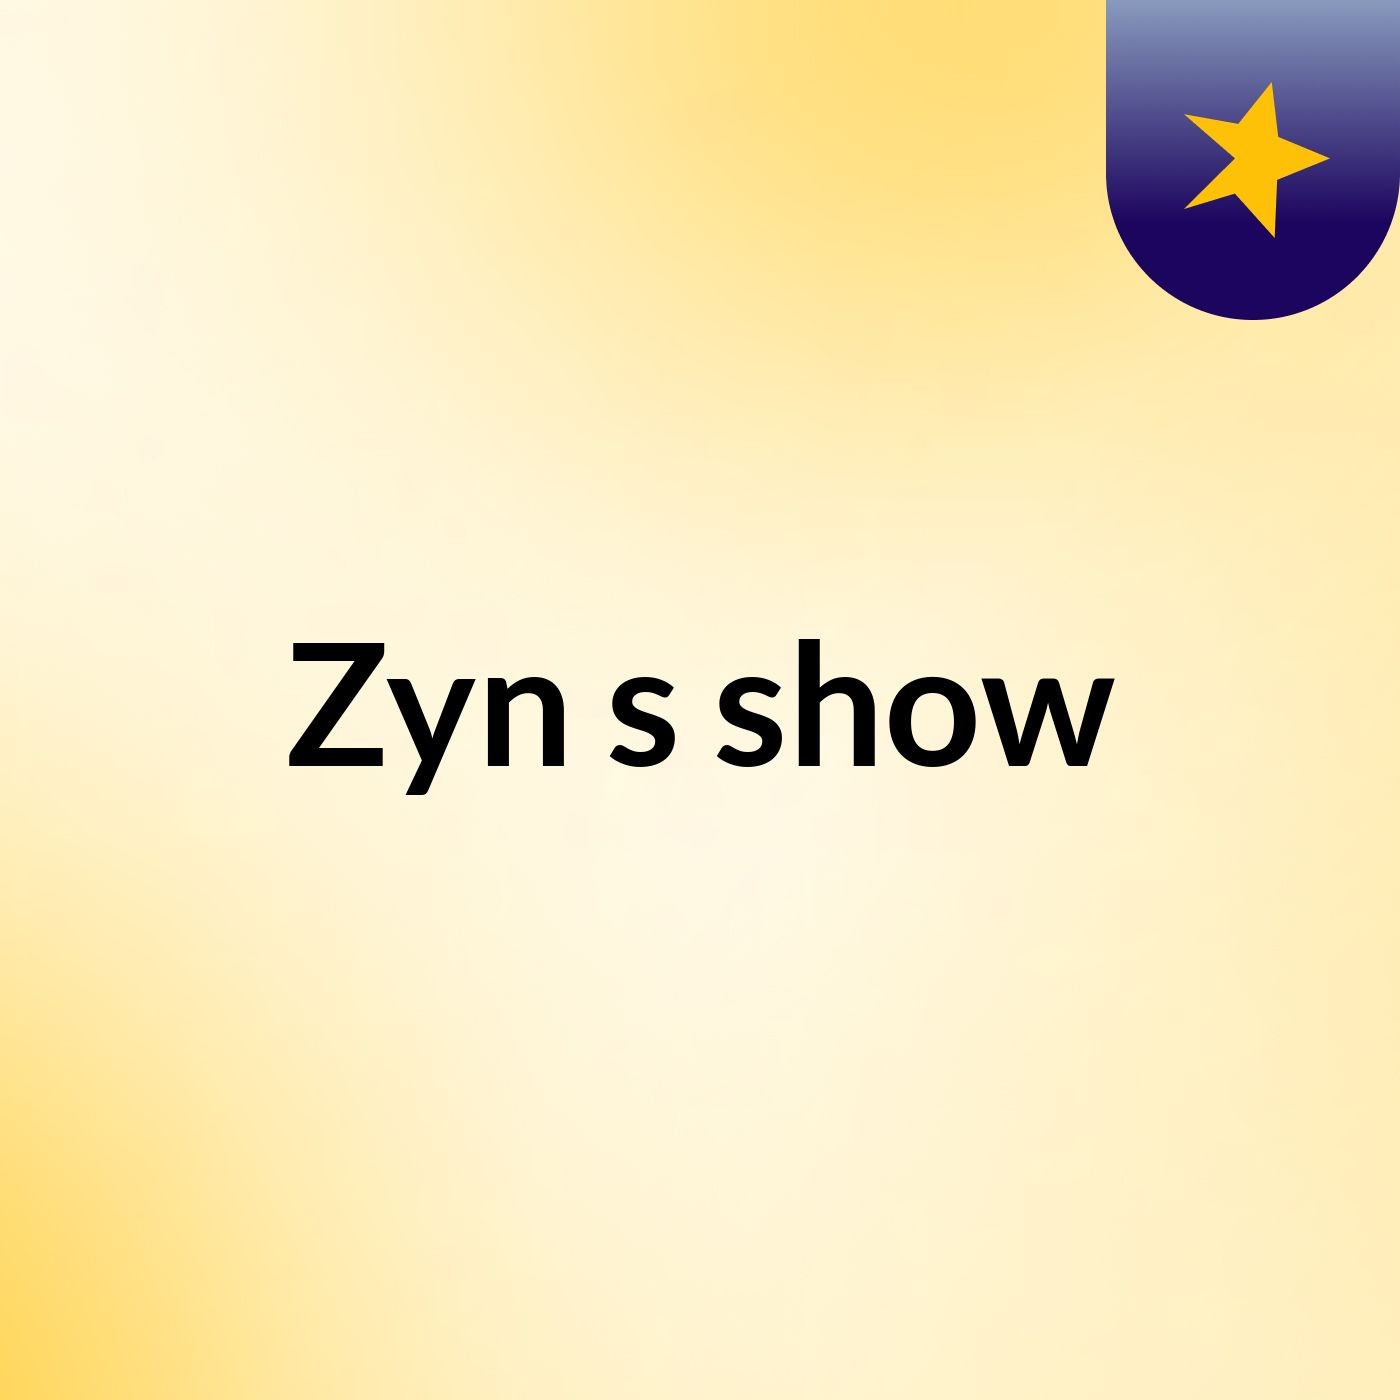 Zyn's show:Zyn